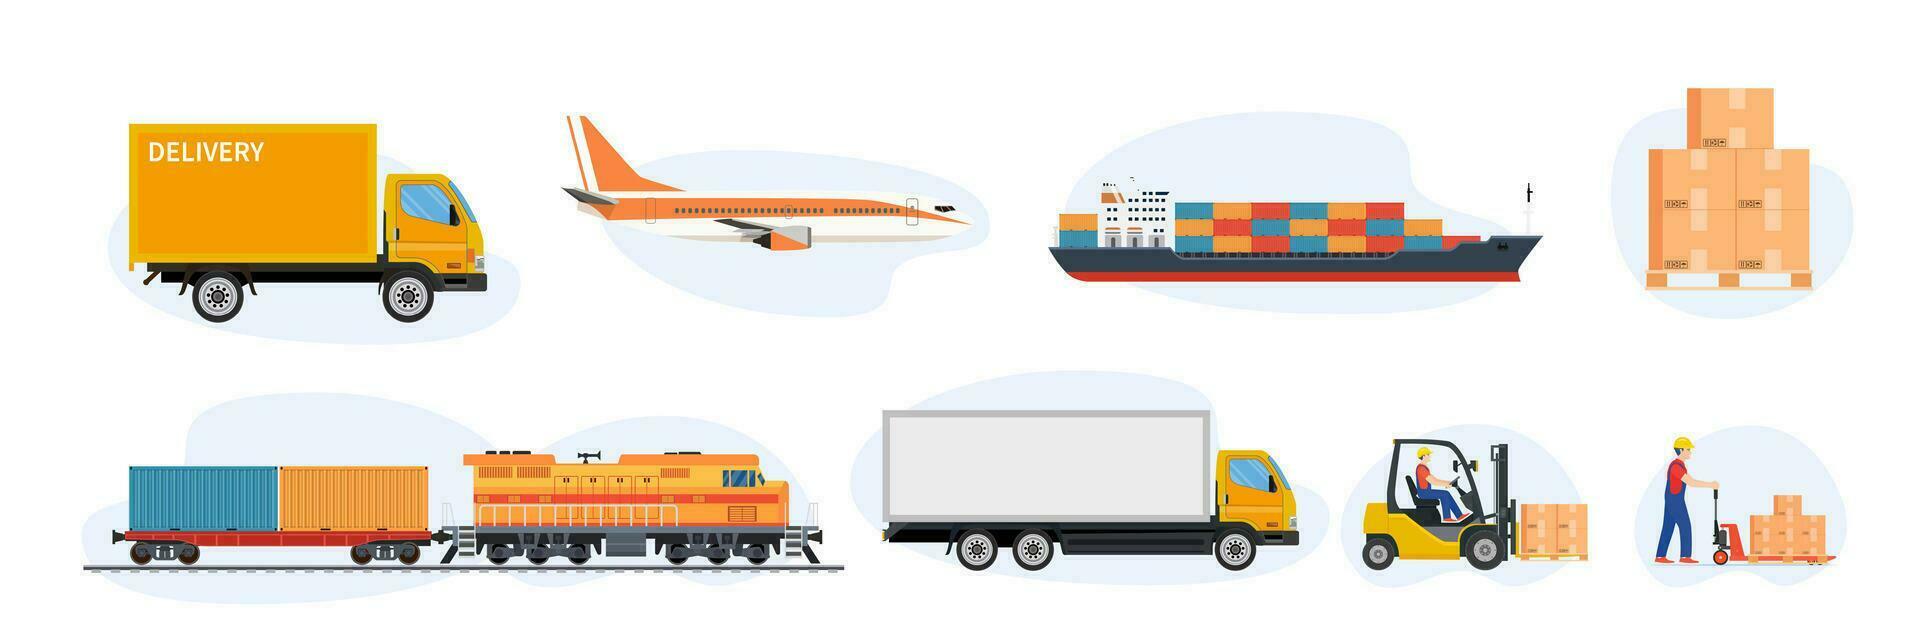 leverans och logistik transport ikoner. frakt frakt sändning, skiften magasin logistik och leverans bil, flygplan, fartyg och gaffeltruck lastbil lastare. vektor illustration i platt stil